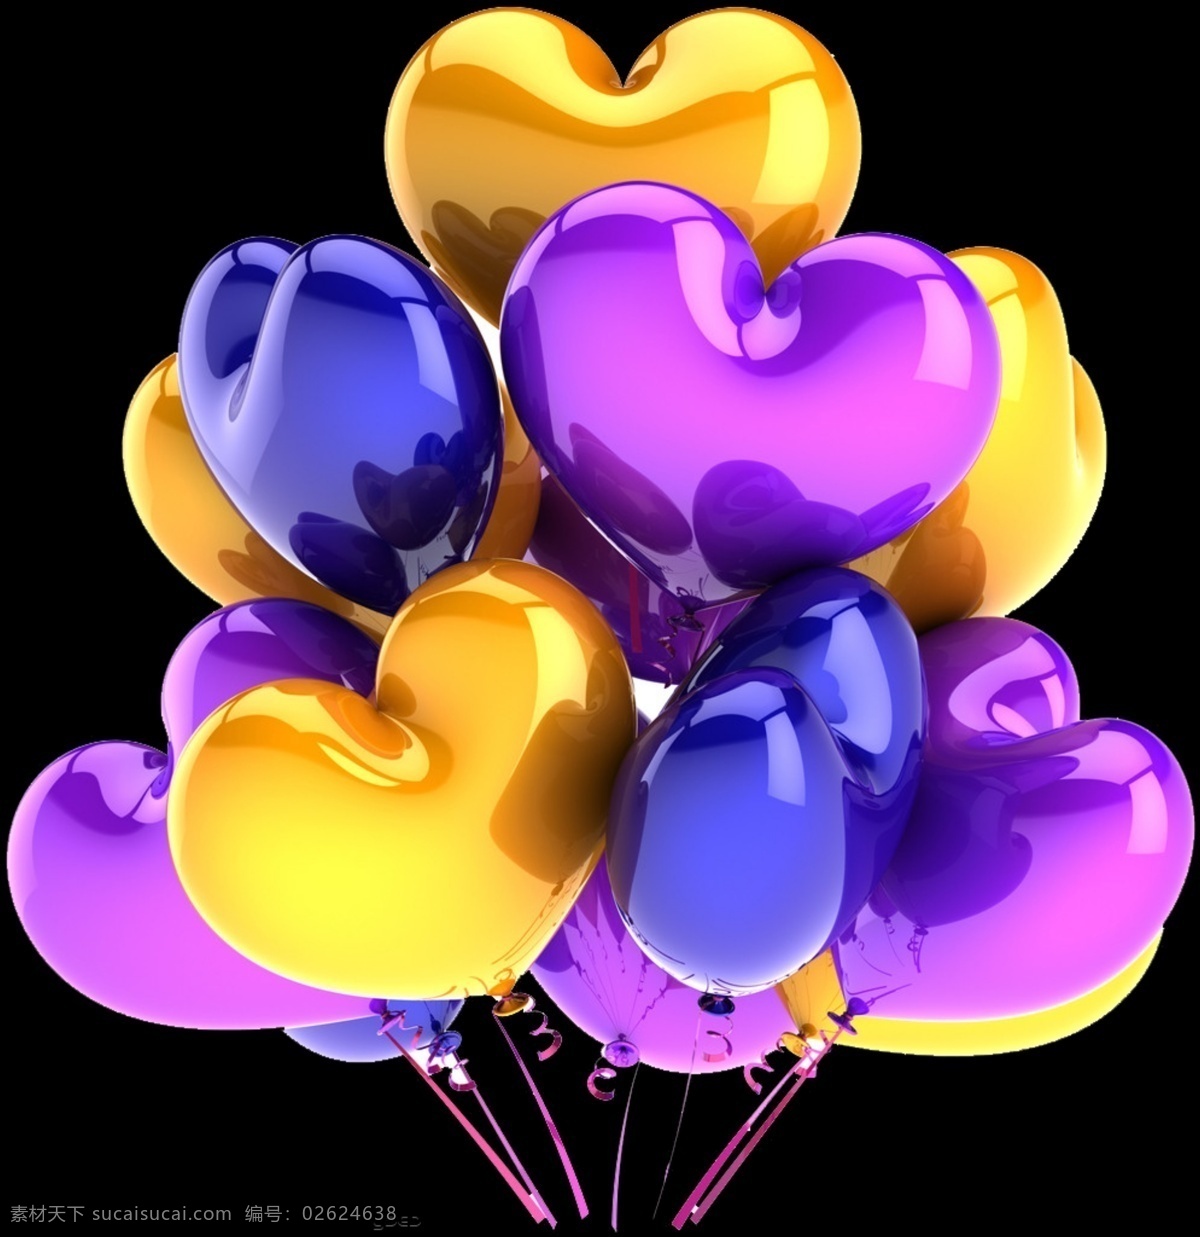 心形气球 卡通气球 彩色 手绘气球 气球背景 节日元素 分层